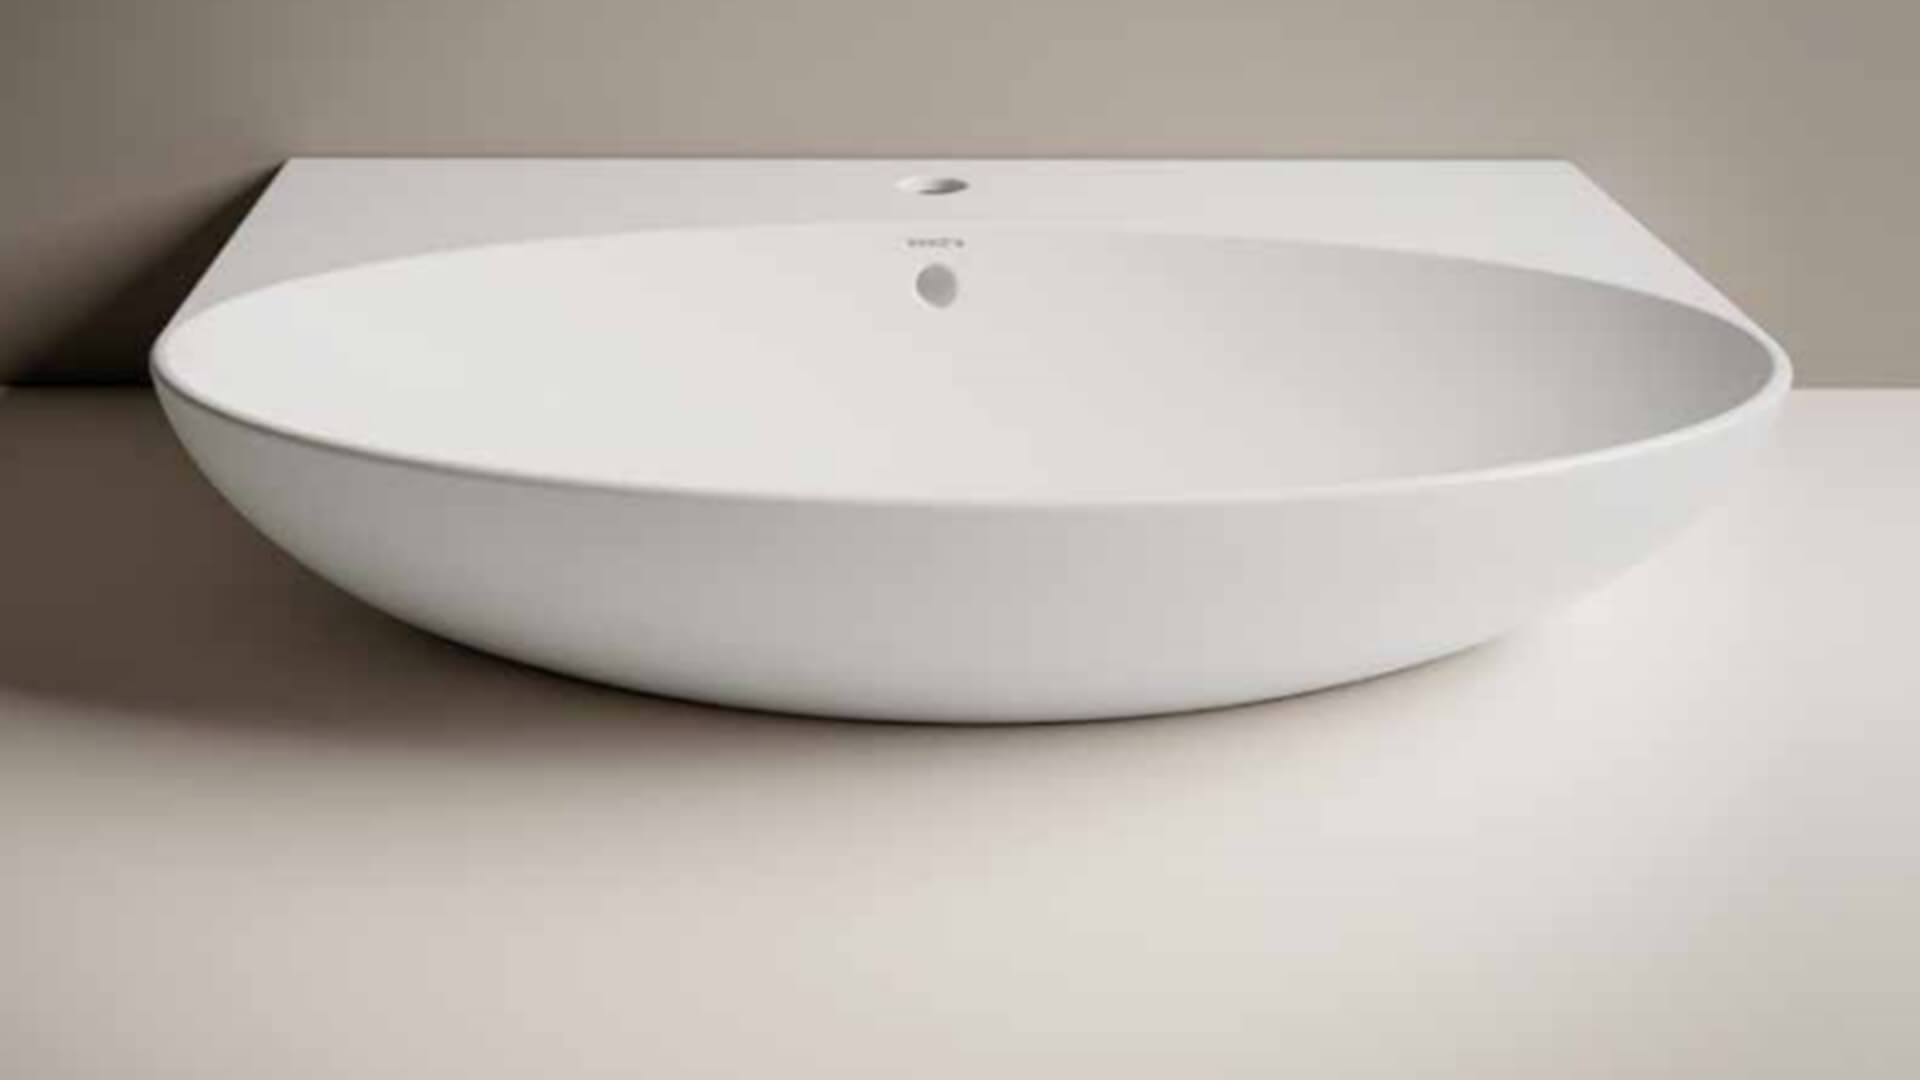 Blog IDW - Consigli utili per arredare il tuo nuovo bagno.